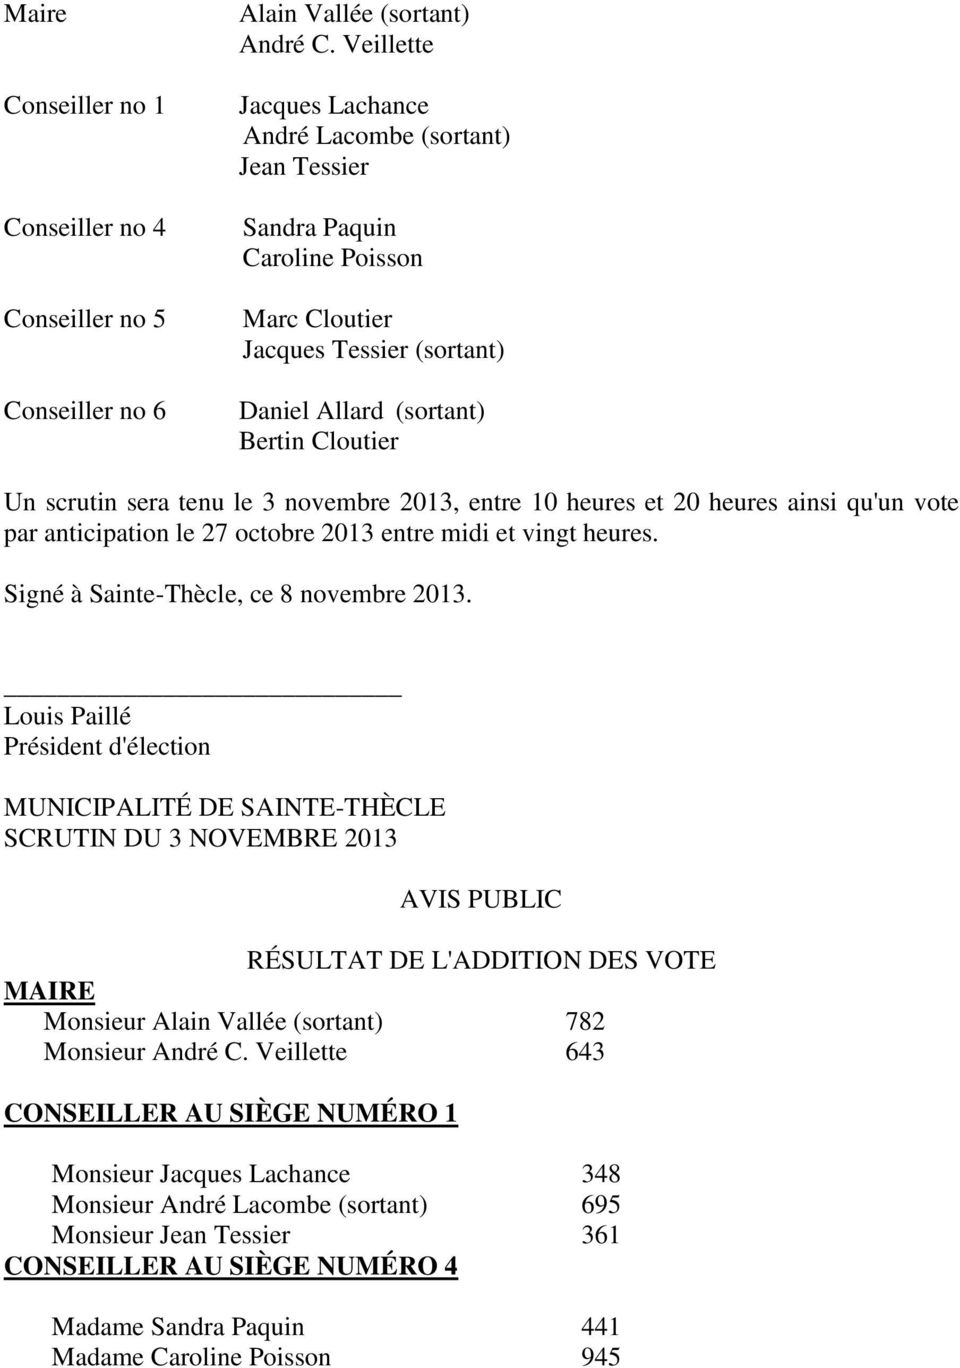 3 novembre 2013, entre 10 heures et 20 heures ainsi qu'un vote par anticipation le 27 octobre 2013 entre midi et vingt heures. Signé à Sainte-Thècle, ce 8 novembre 2013.